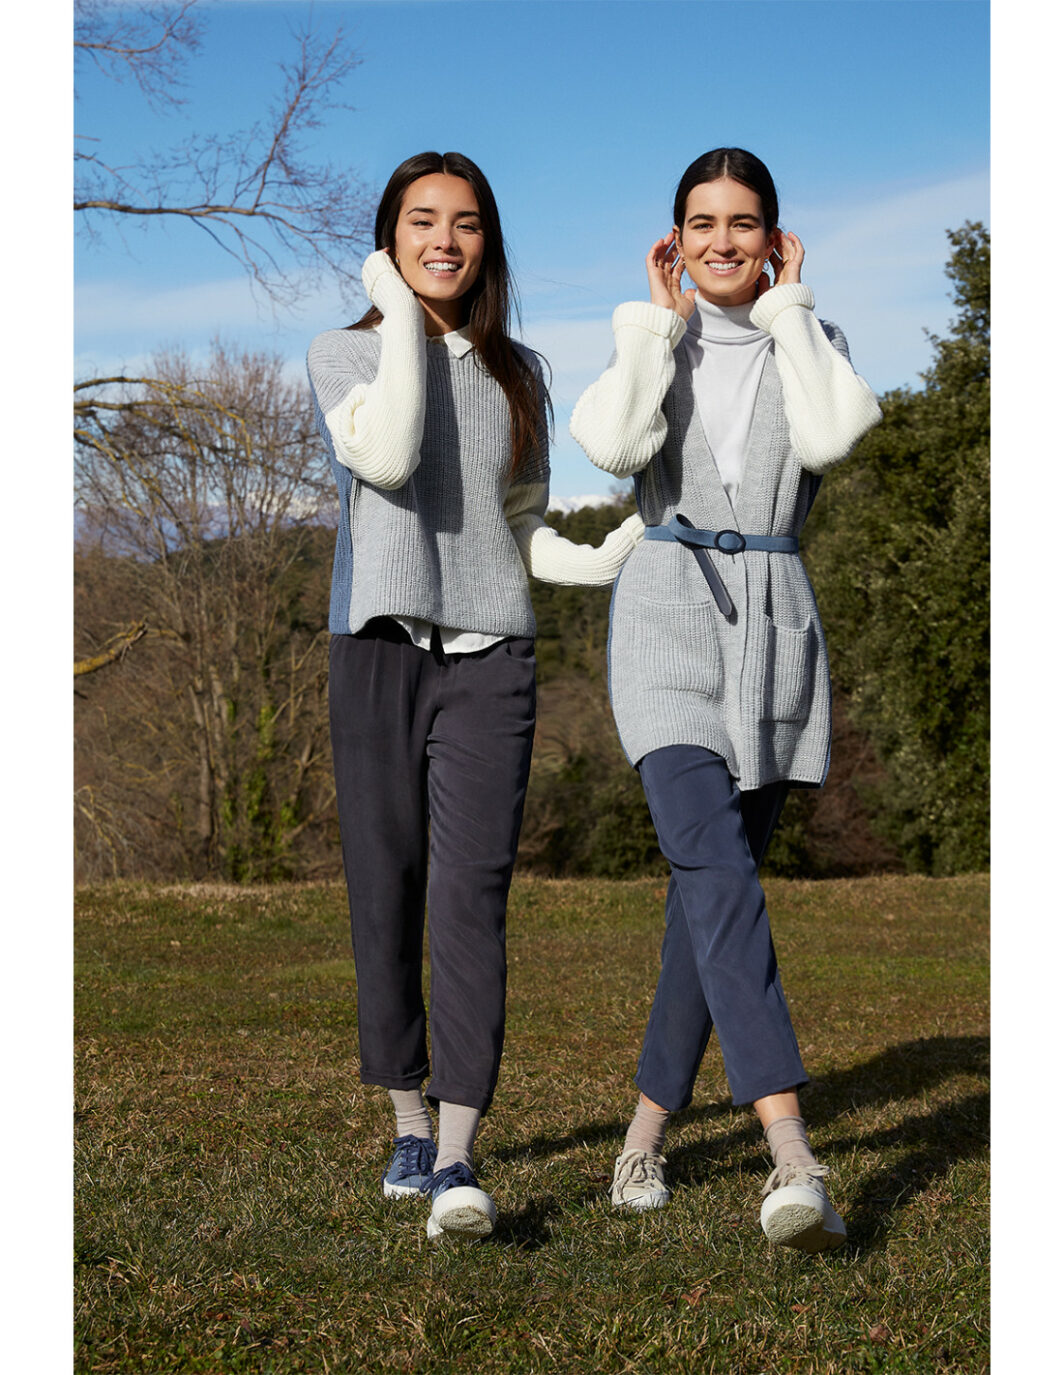 Pantalon Tencel et Rayonne matière écologique MUS@BOMBON marque espagnole éco-friendly